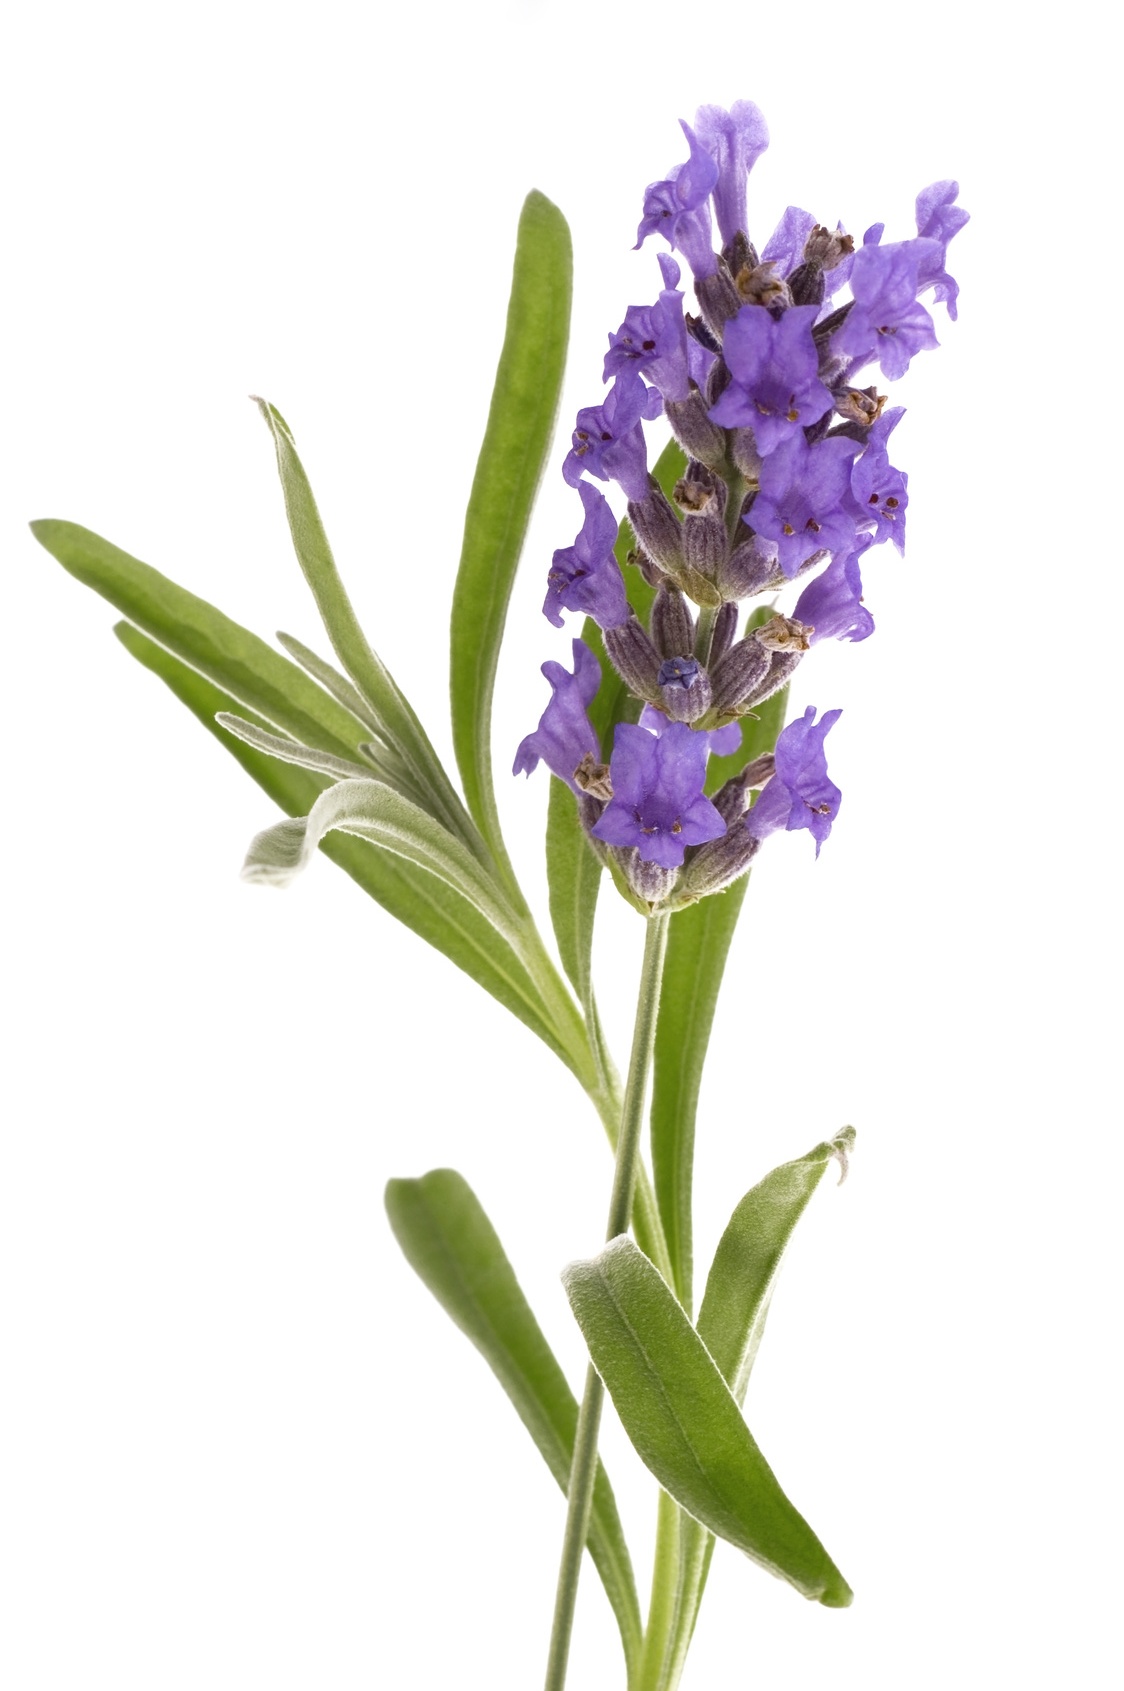 Mandorla-Natursubstanz: Lavendel aus kontrolliert biologischem Anbau